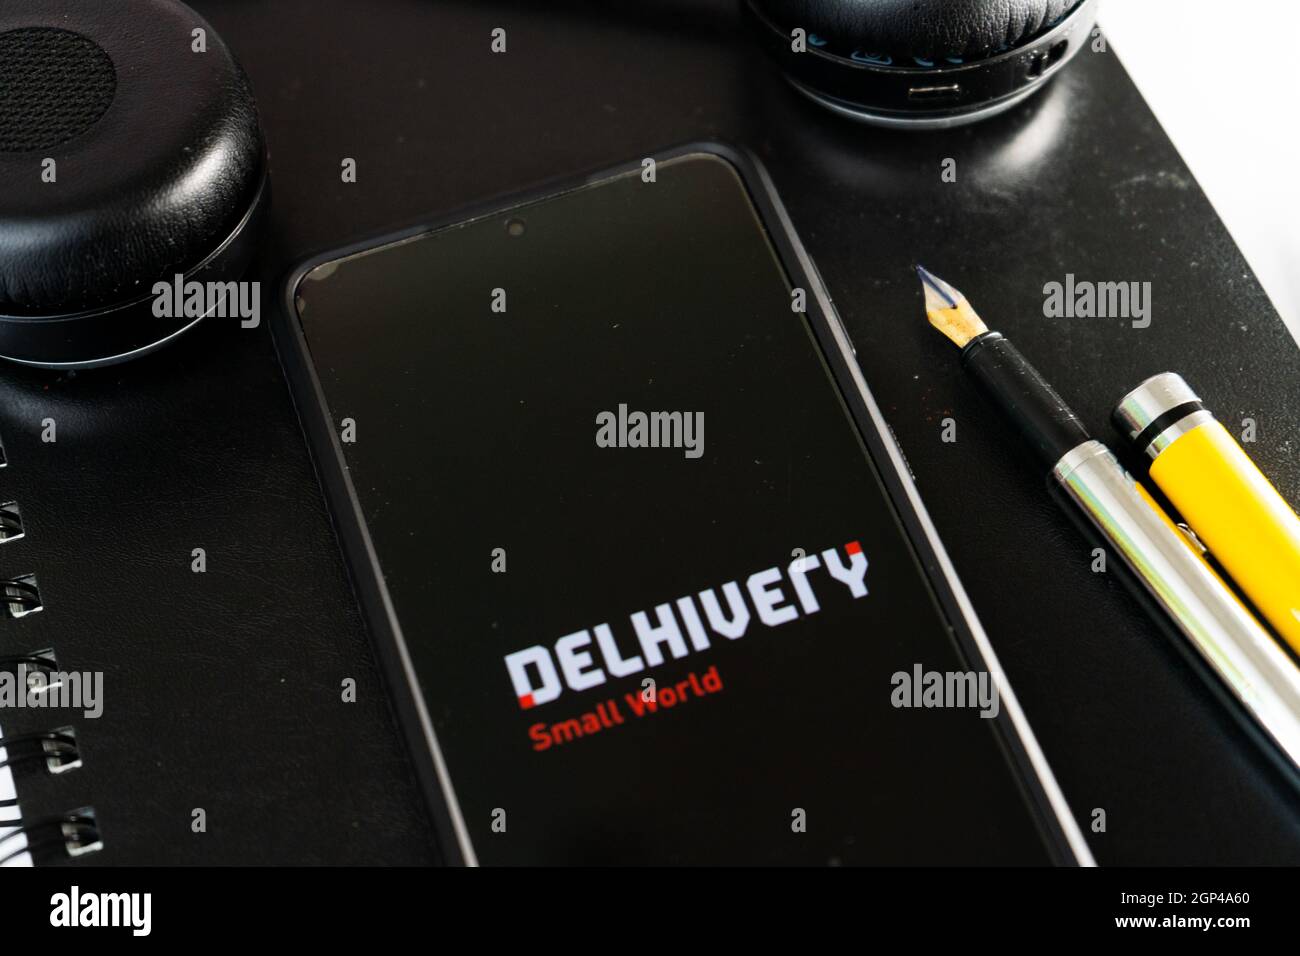 Flatlay-Aufnahme mit einem Mobiltelefon, das die Delhivery-App des indischen Logistik-Startups zeigt und Unternehmen im E-Commerce mit Abholung und Lieferung unterstützt Stockfoto